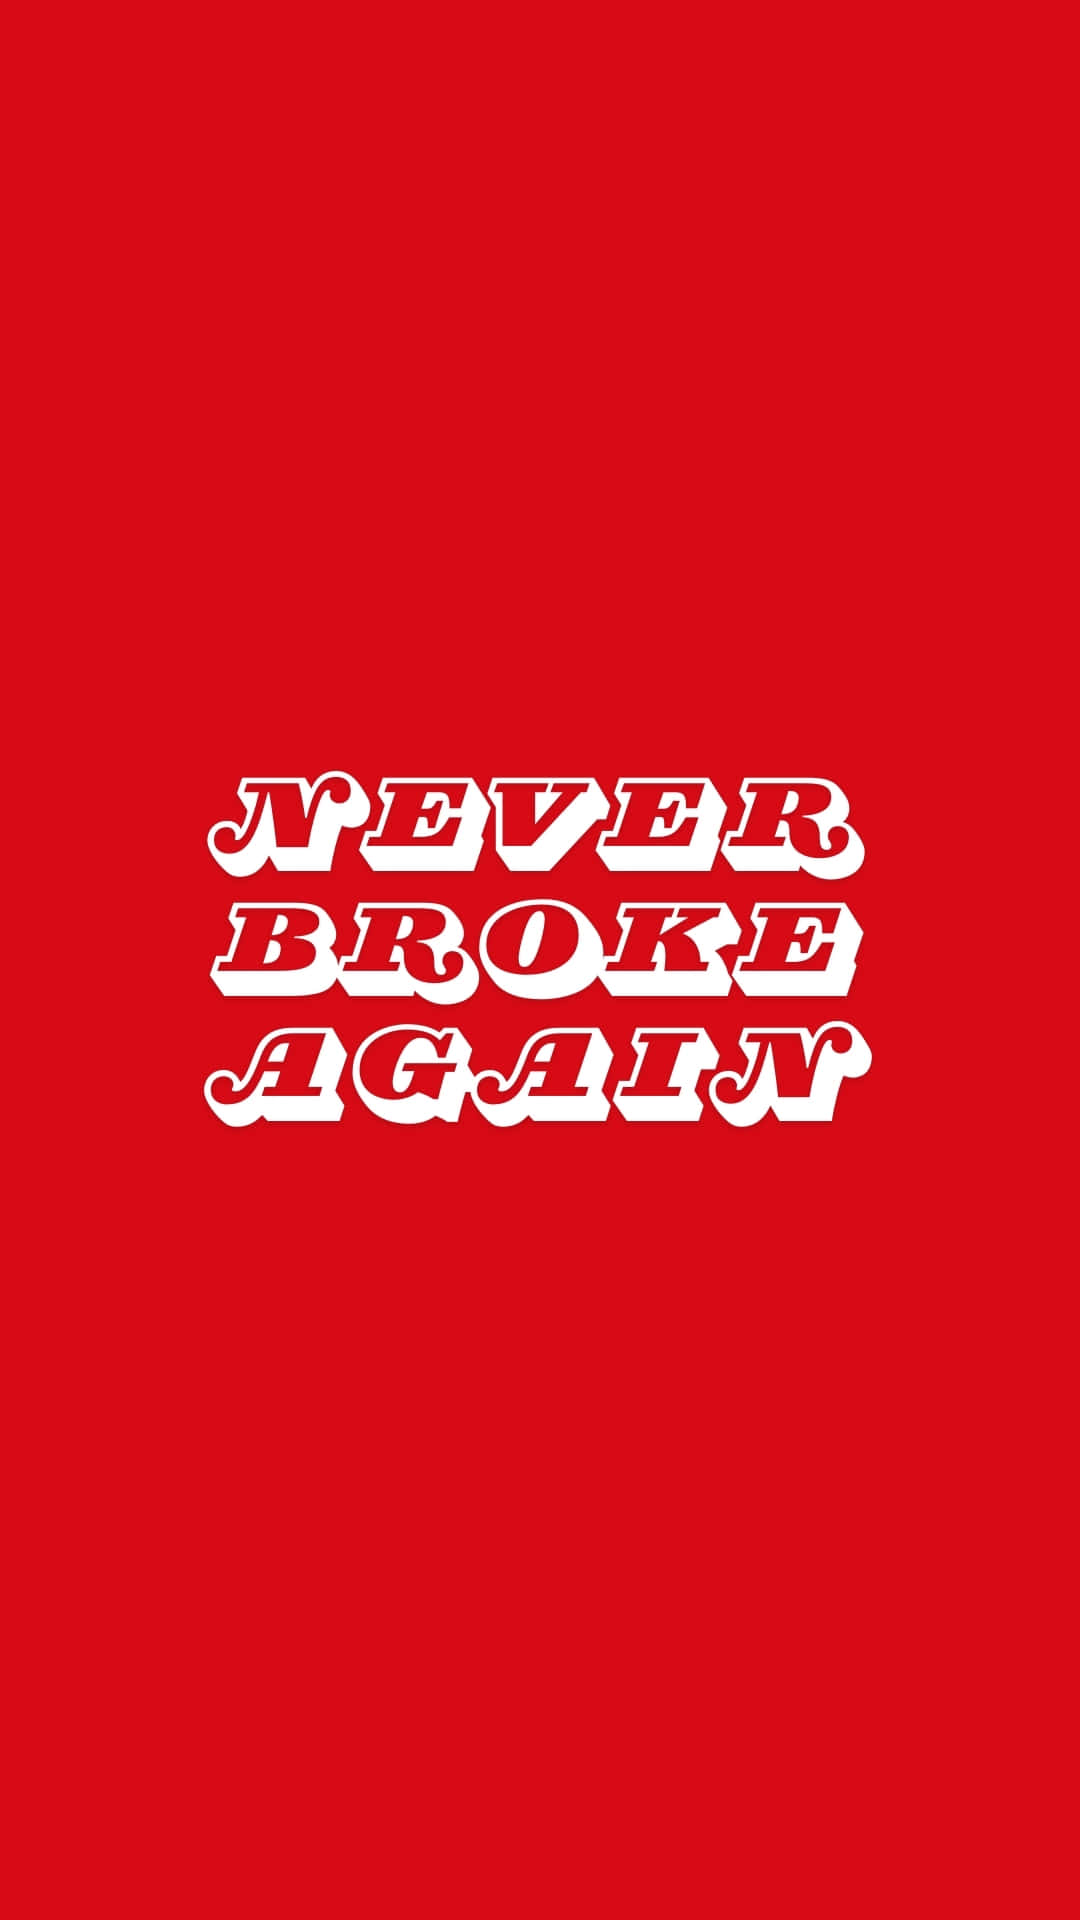 Never Broke Again Logo Red Background Wallpaper